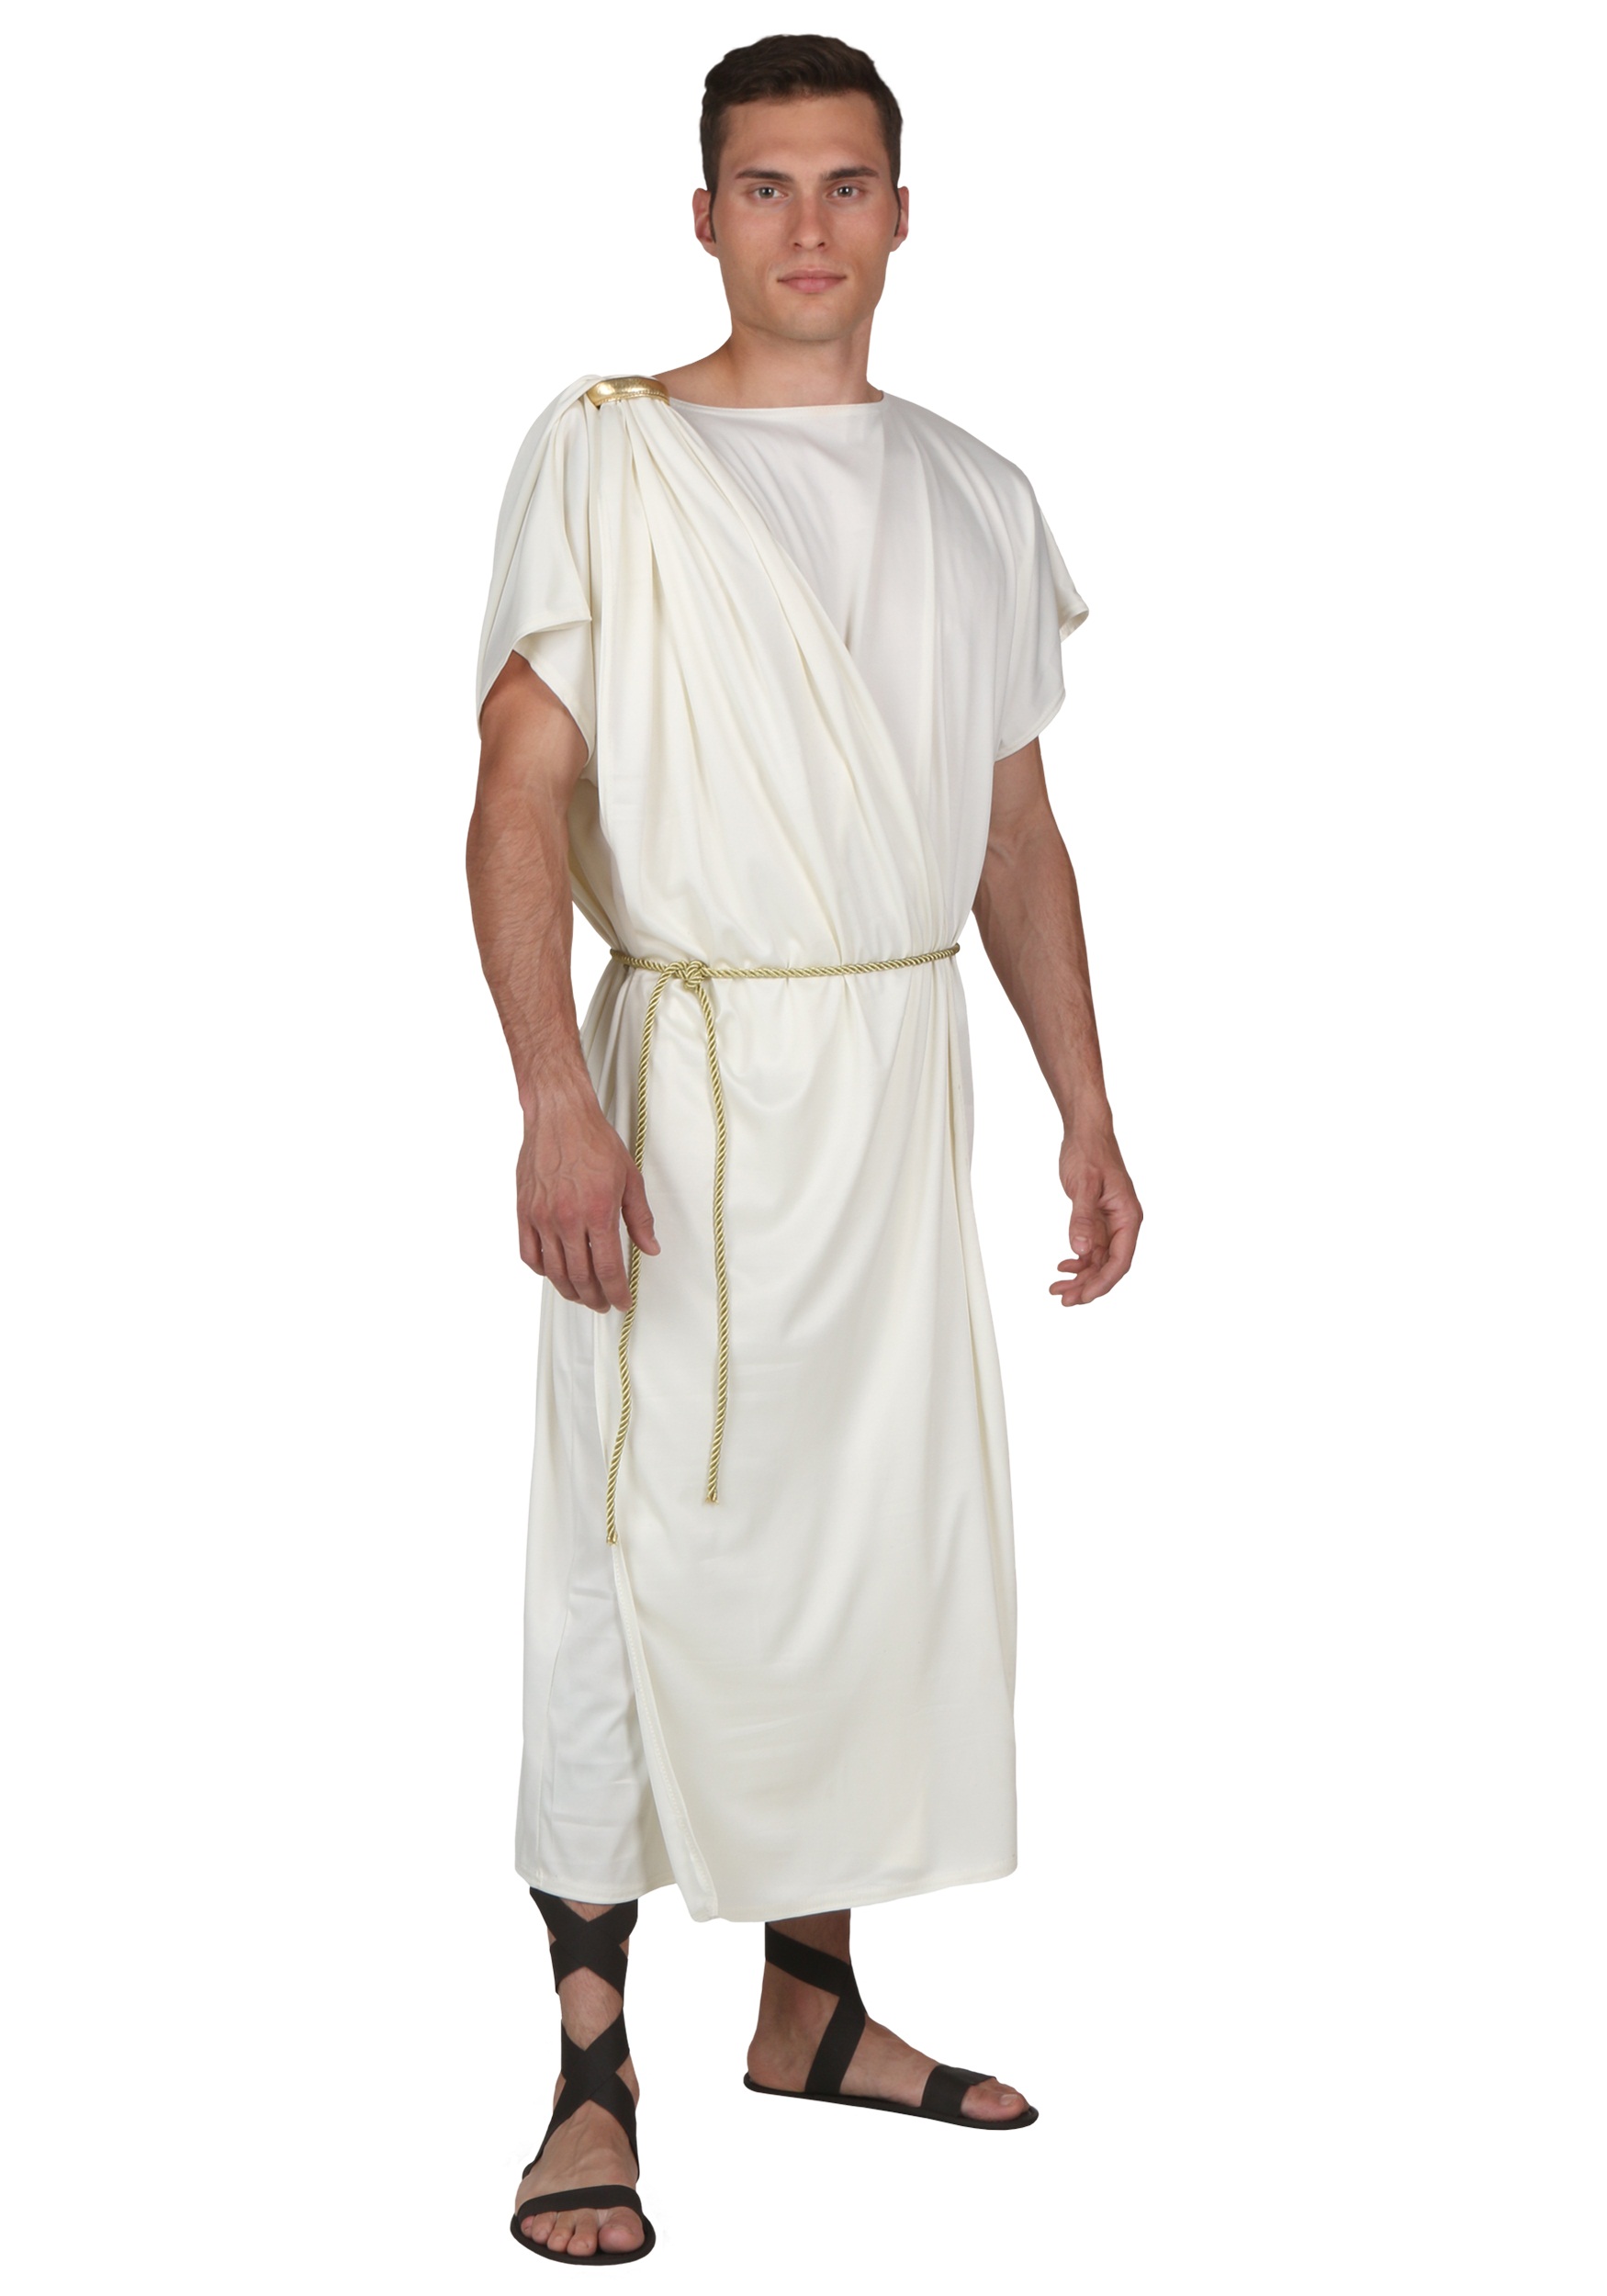 Plus Size Toga Halloween Fancy Dress Costume For Men , Greek Fancy Dress Costume